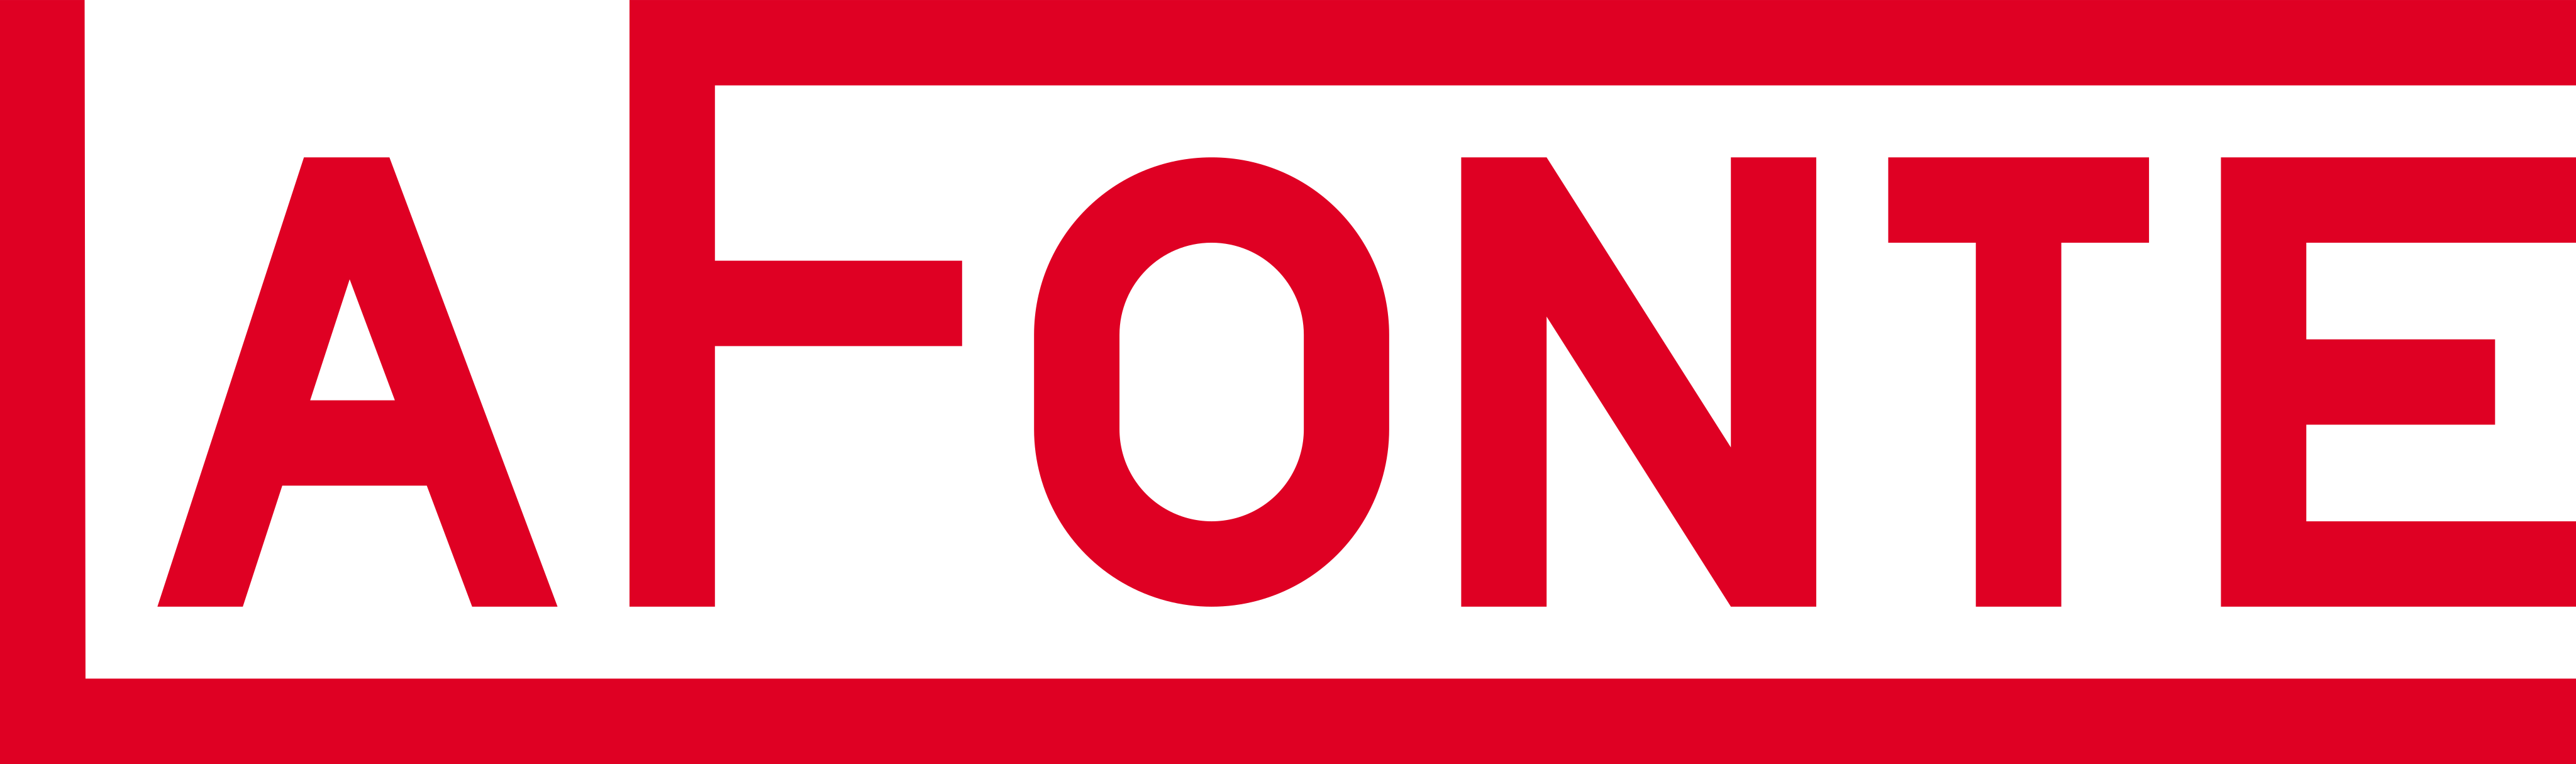 La Fonte Logo.